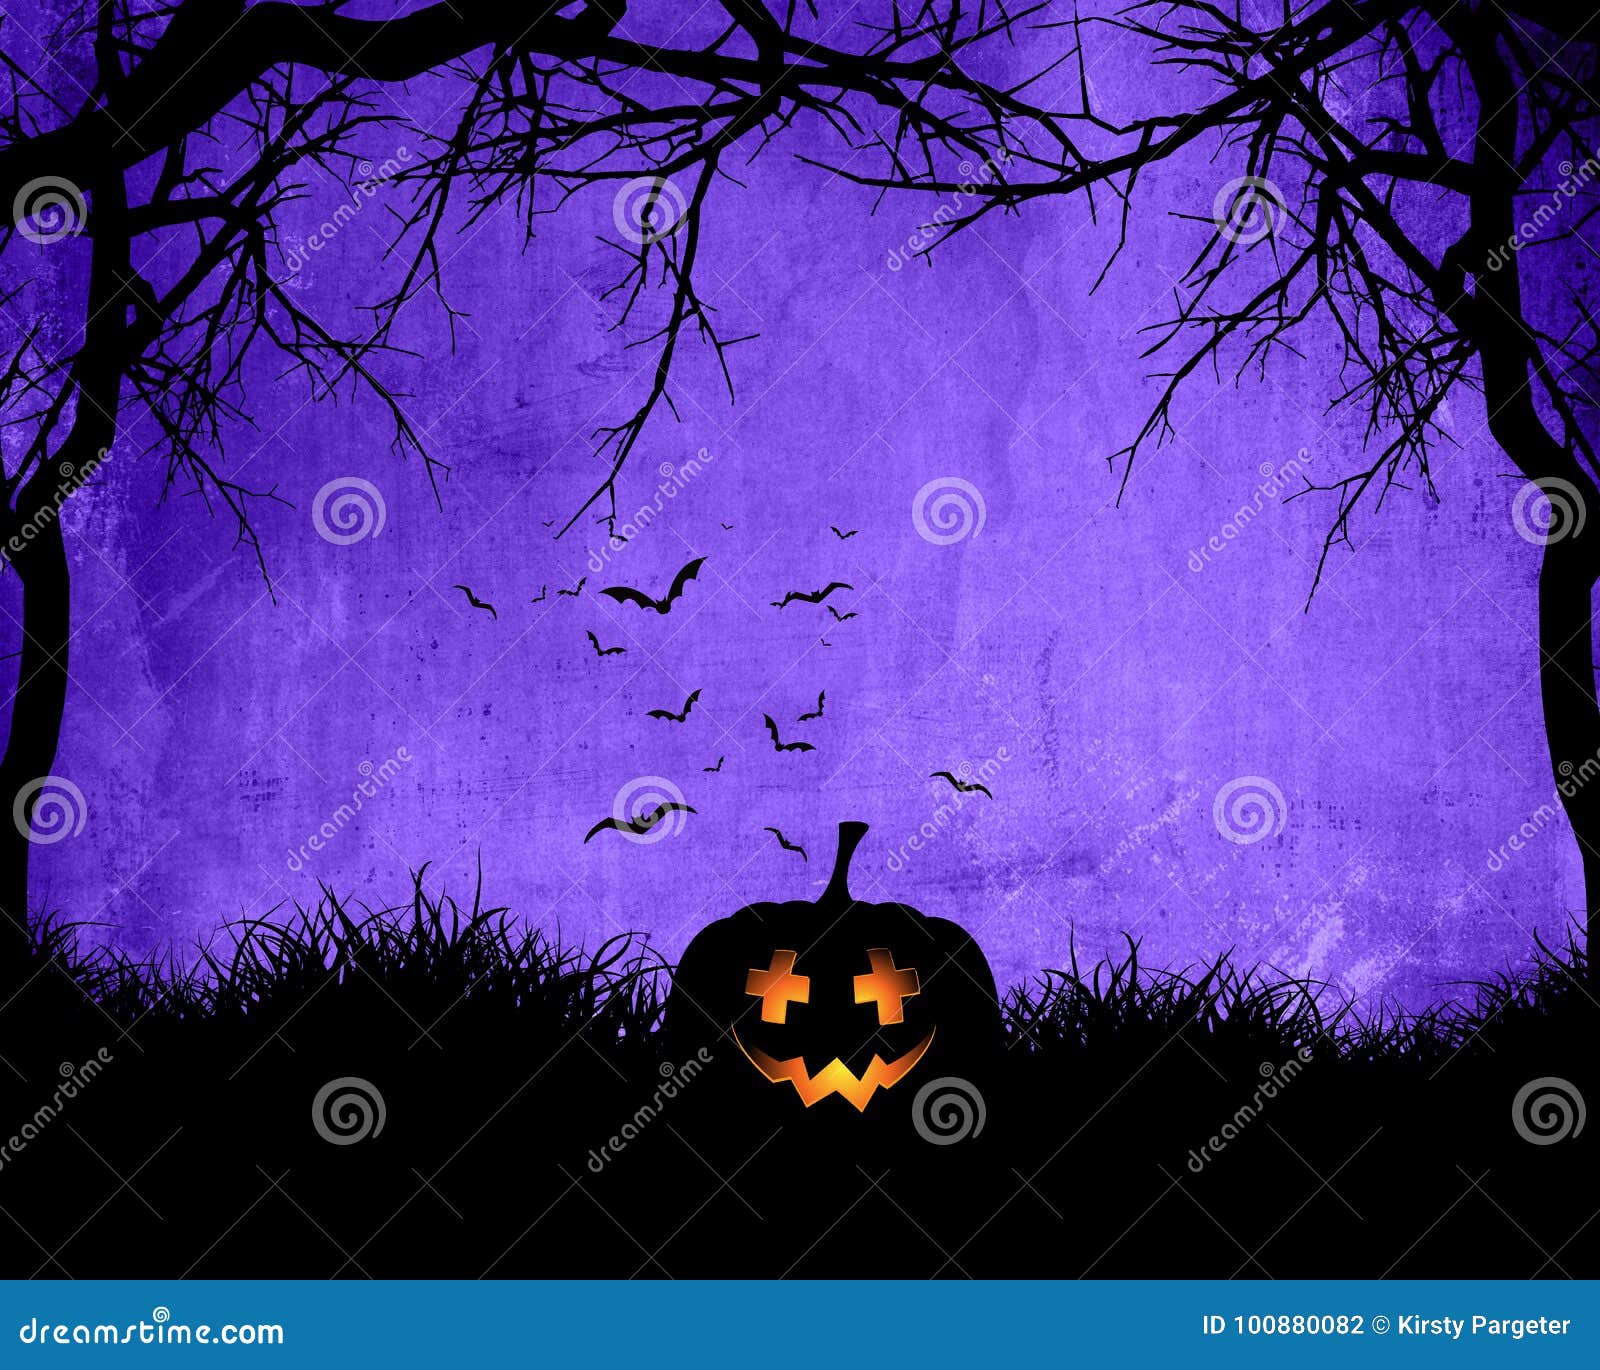 Đồng hồ đã chuyển sang tháng 10, mùa Halloween đang đến gần. Bức ảnh với nền tím, một quả bí ngô đáng yêu và các họa tiết liên quan đến Halloween sẽ khiến bạn muốn chìm đắm trong không khí ấm áp của ngày hội kinh dị này.